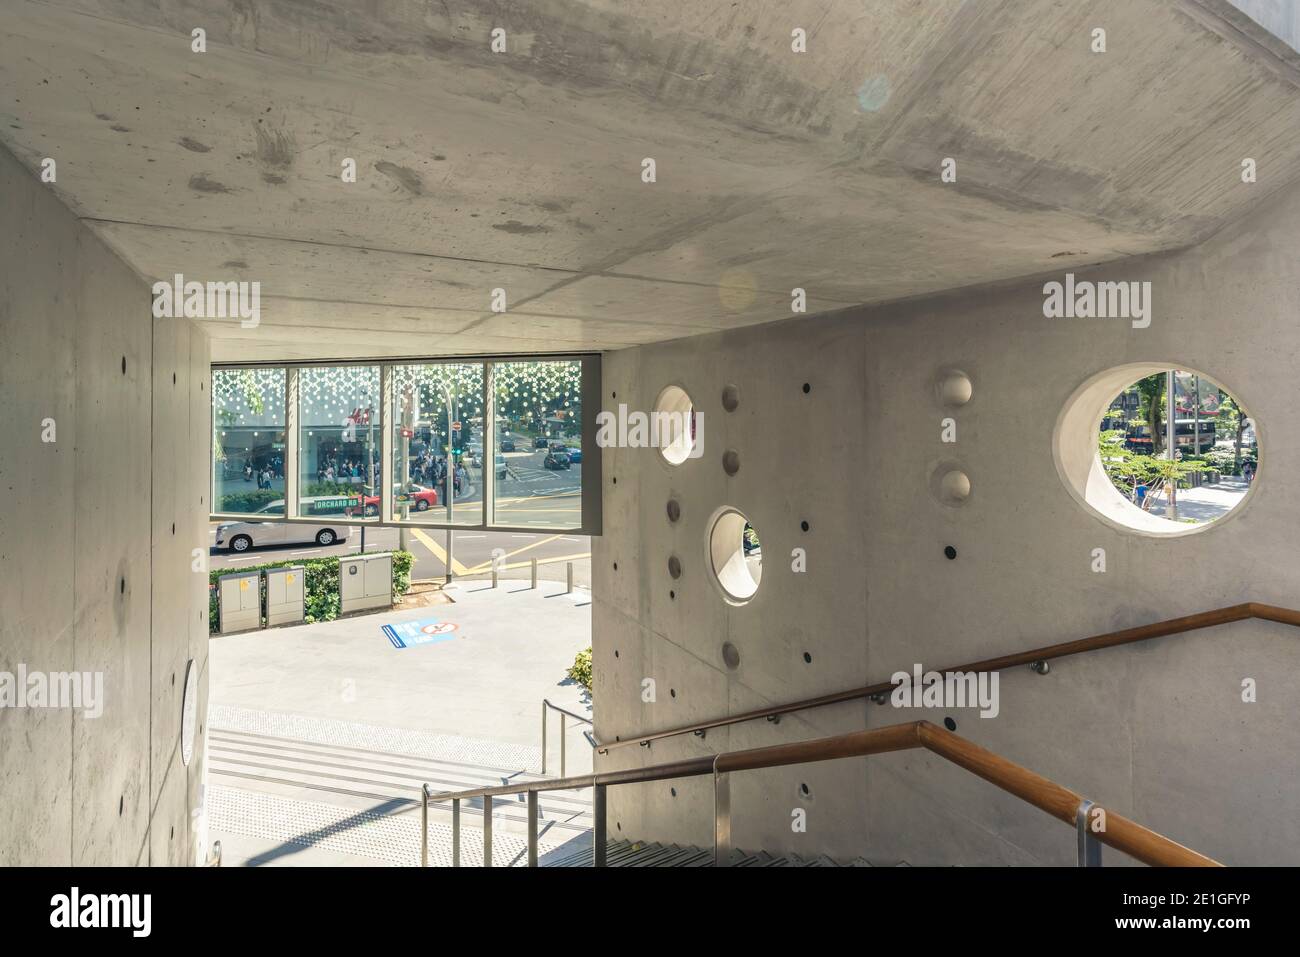 Façade en béton avec fenêtres rondes, centre commercial Design Orchard, Singapour. Banque D'Images